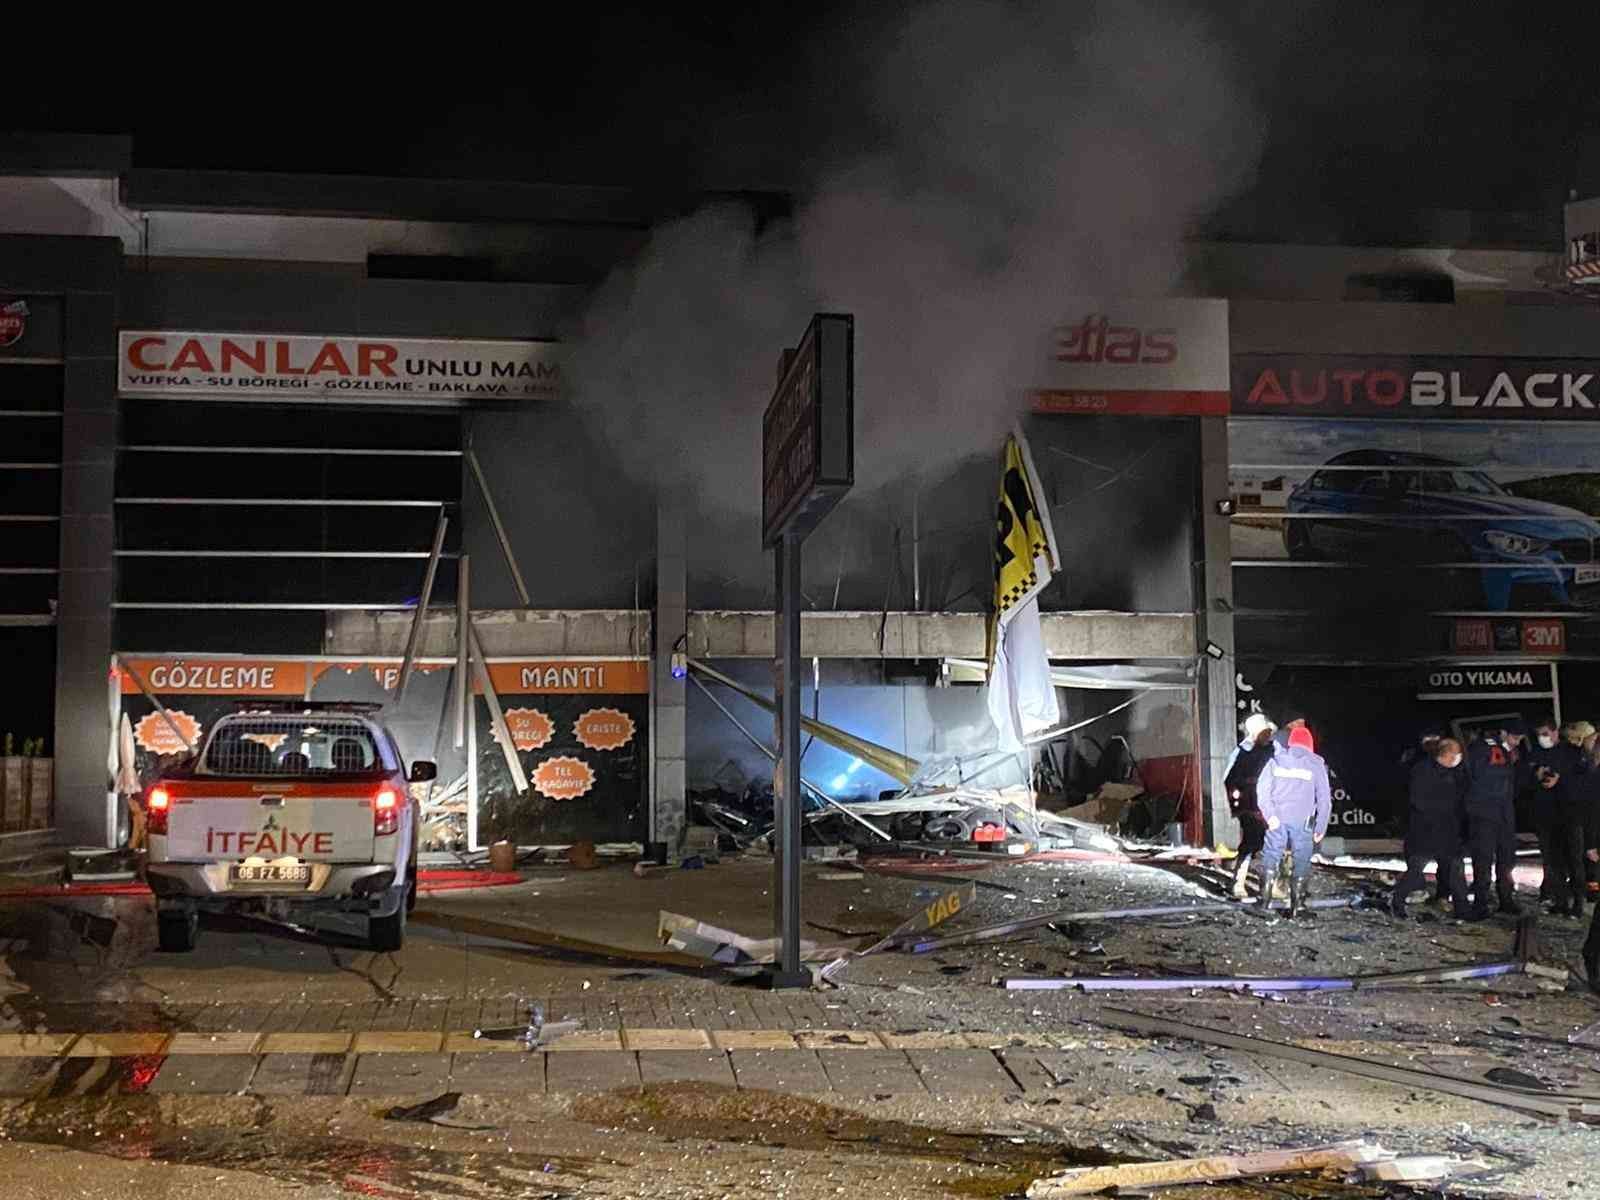 Ankara’da oto lastikçi dükkanında patlama: 3 iş yeri kullanılamaz hale geldi #ankara